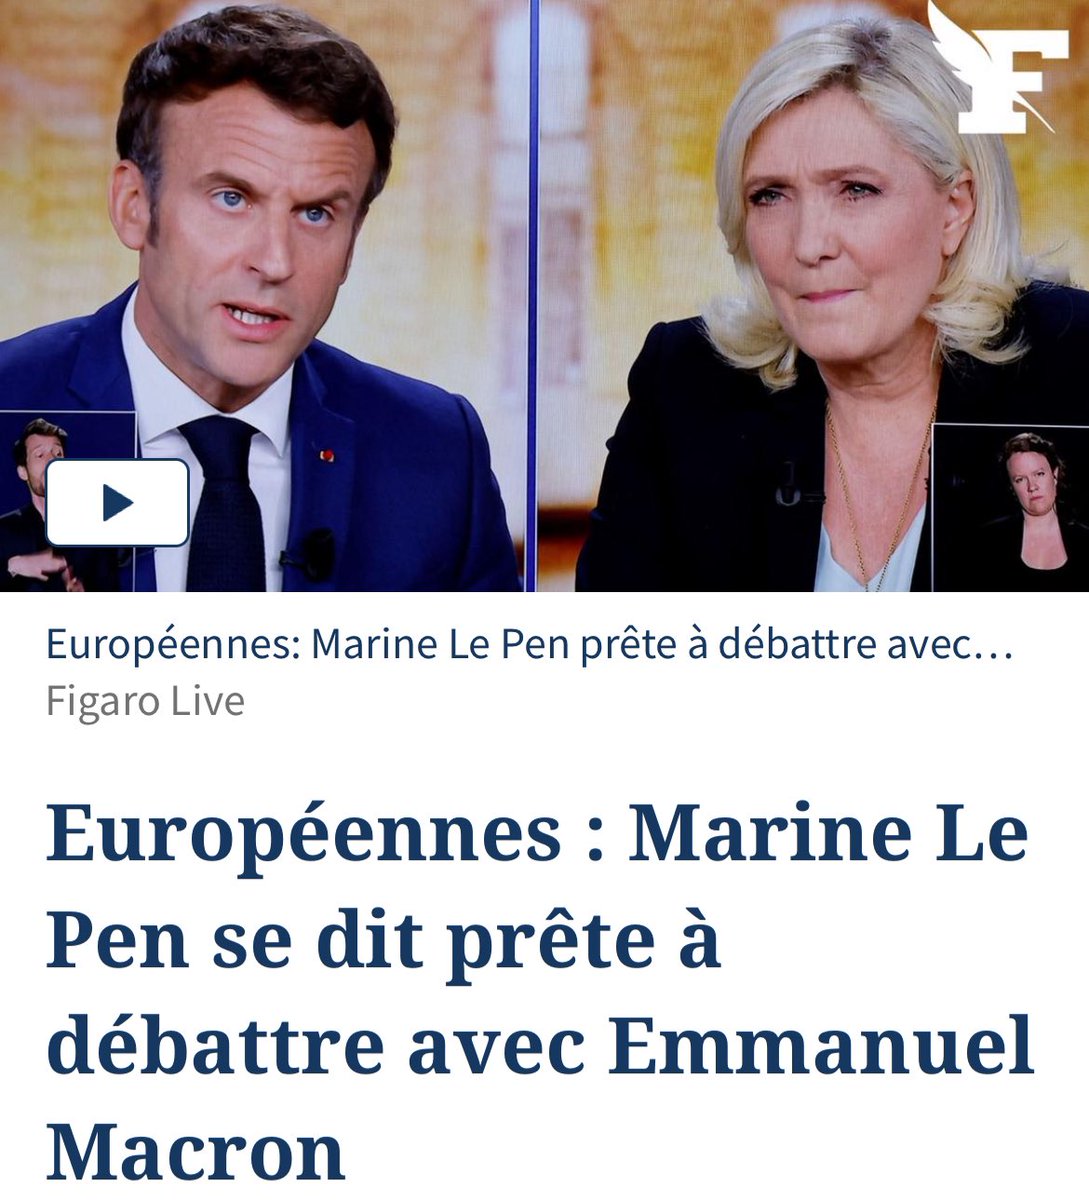 Marine Le Pen et Emmanuel Macron, ce n’est pas un duel : c’est un duo. Ils répondent toujours présents pour s’entraider.